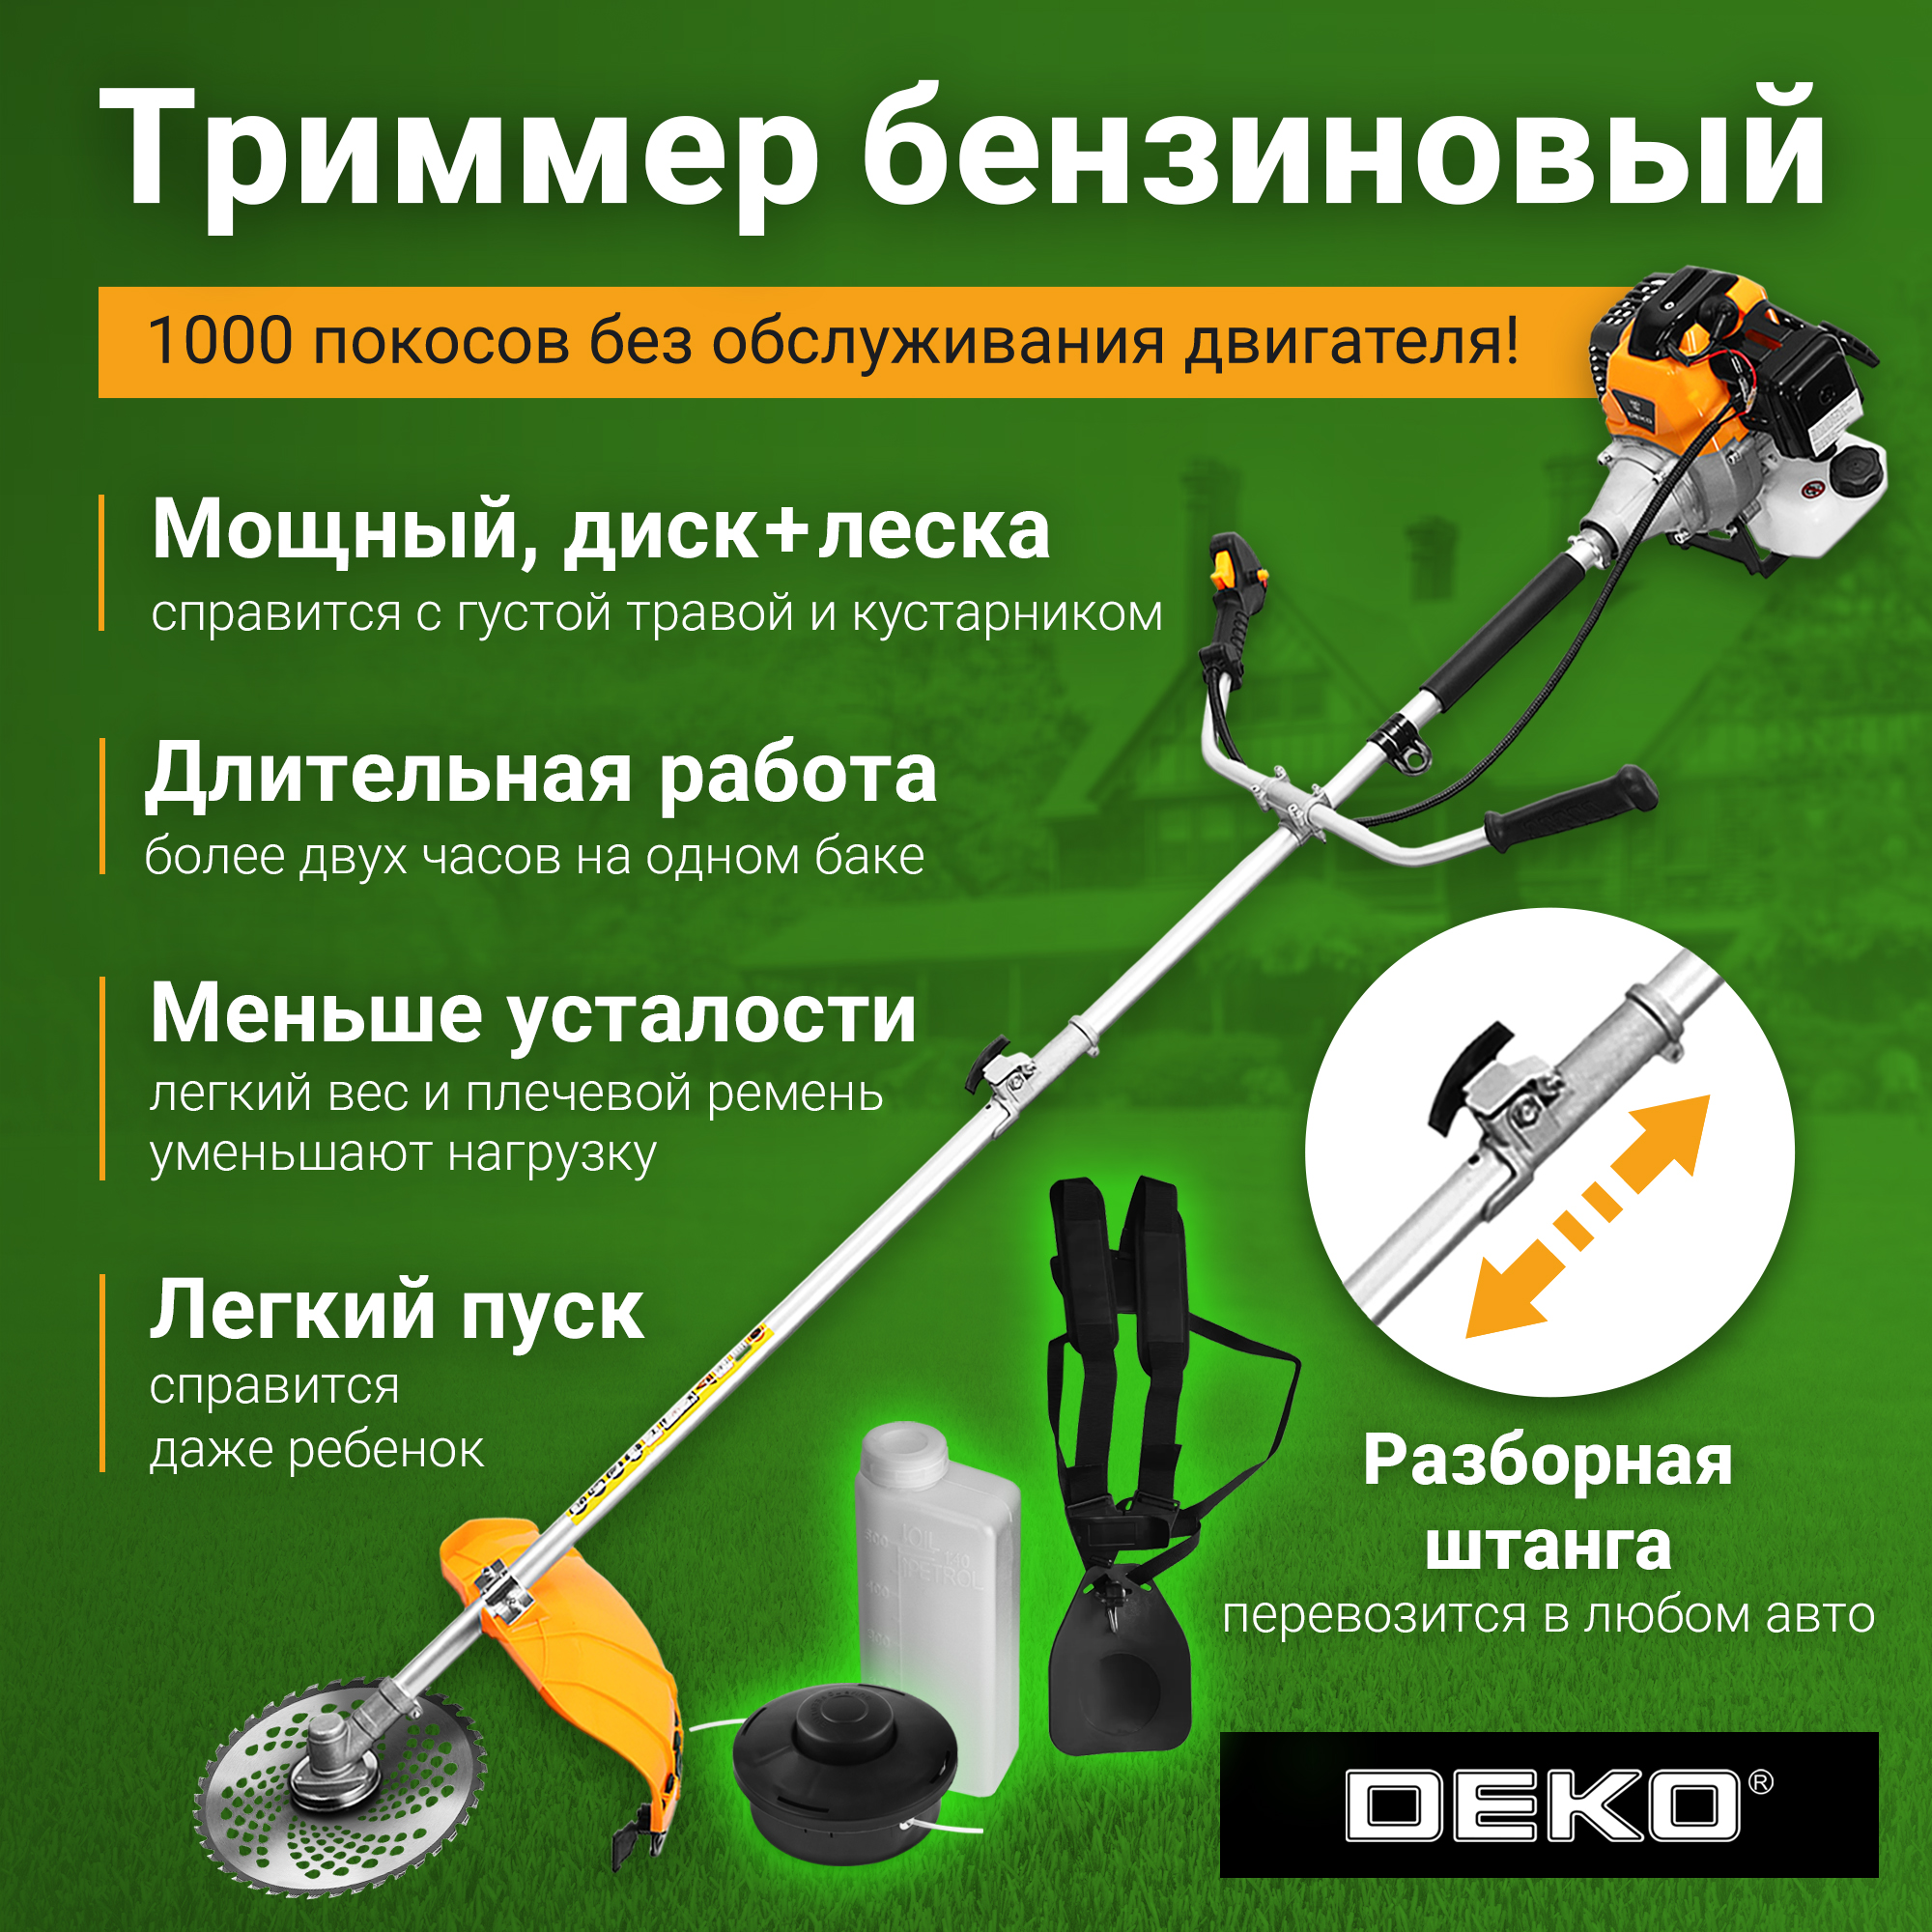 Триммер бензиновый DEKO DKTR52 SET 7, леска/диск 063-4465 - купить в Москве, цены на Мегамаркет | 600016375470